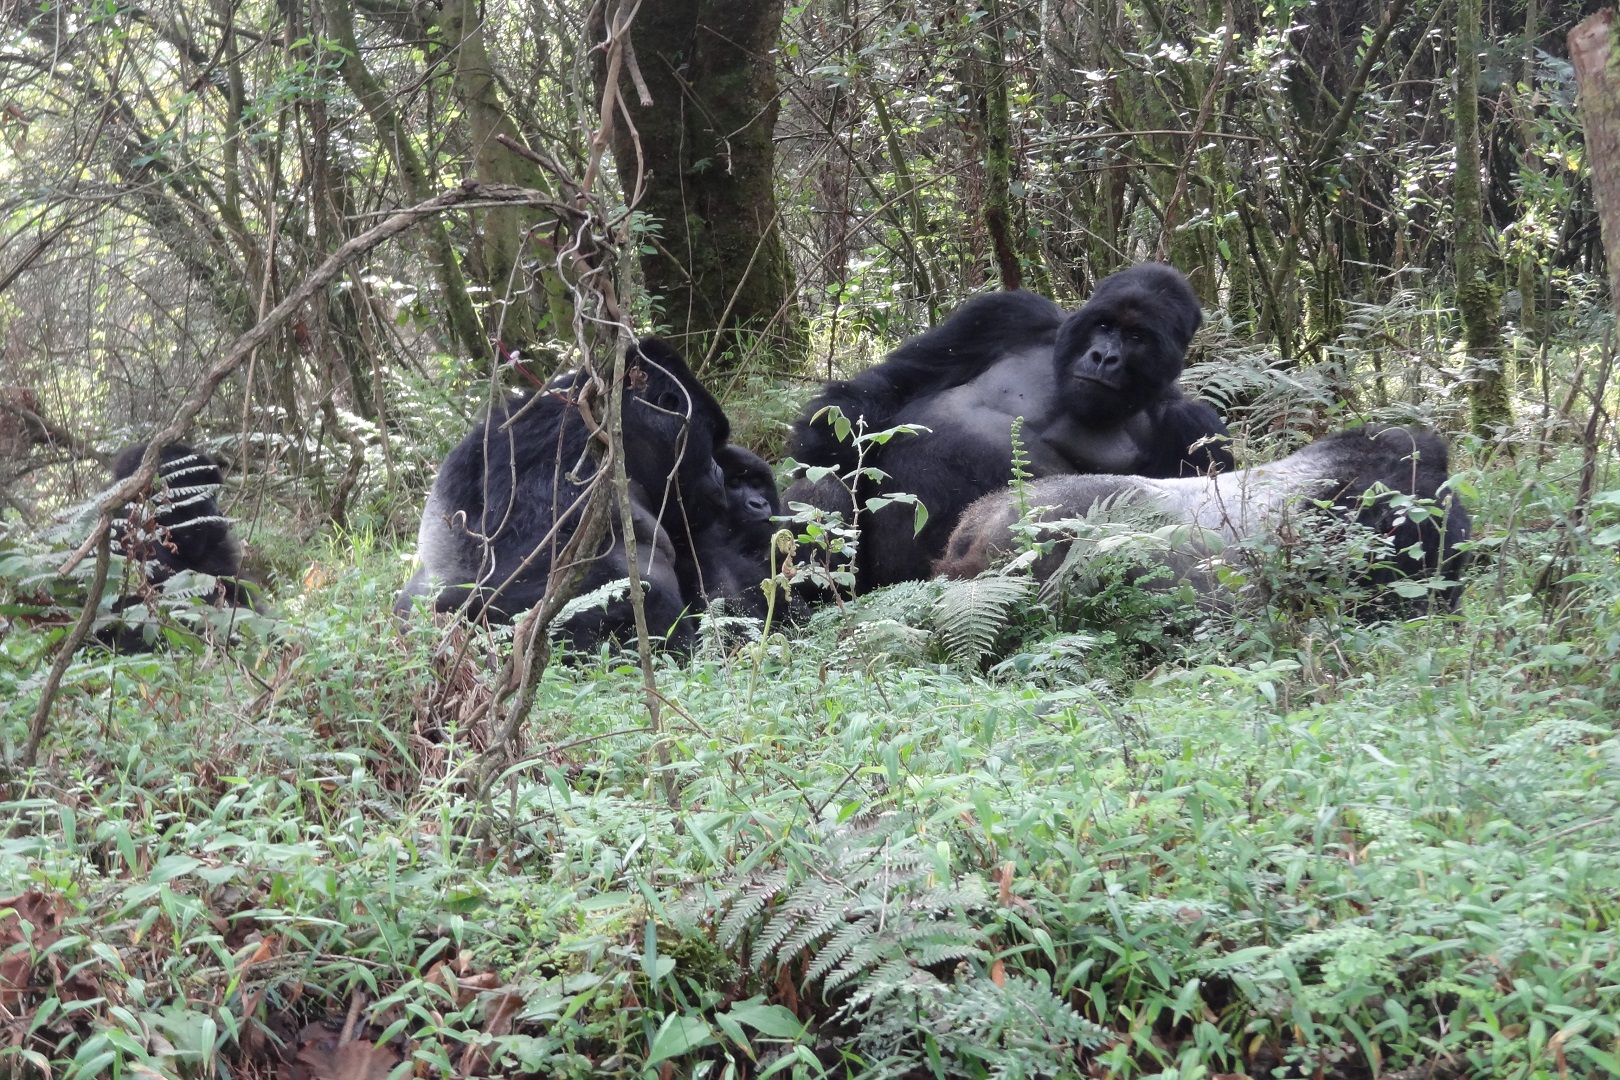 A family of Silverback mountain gorillas